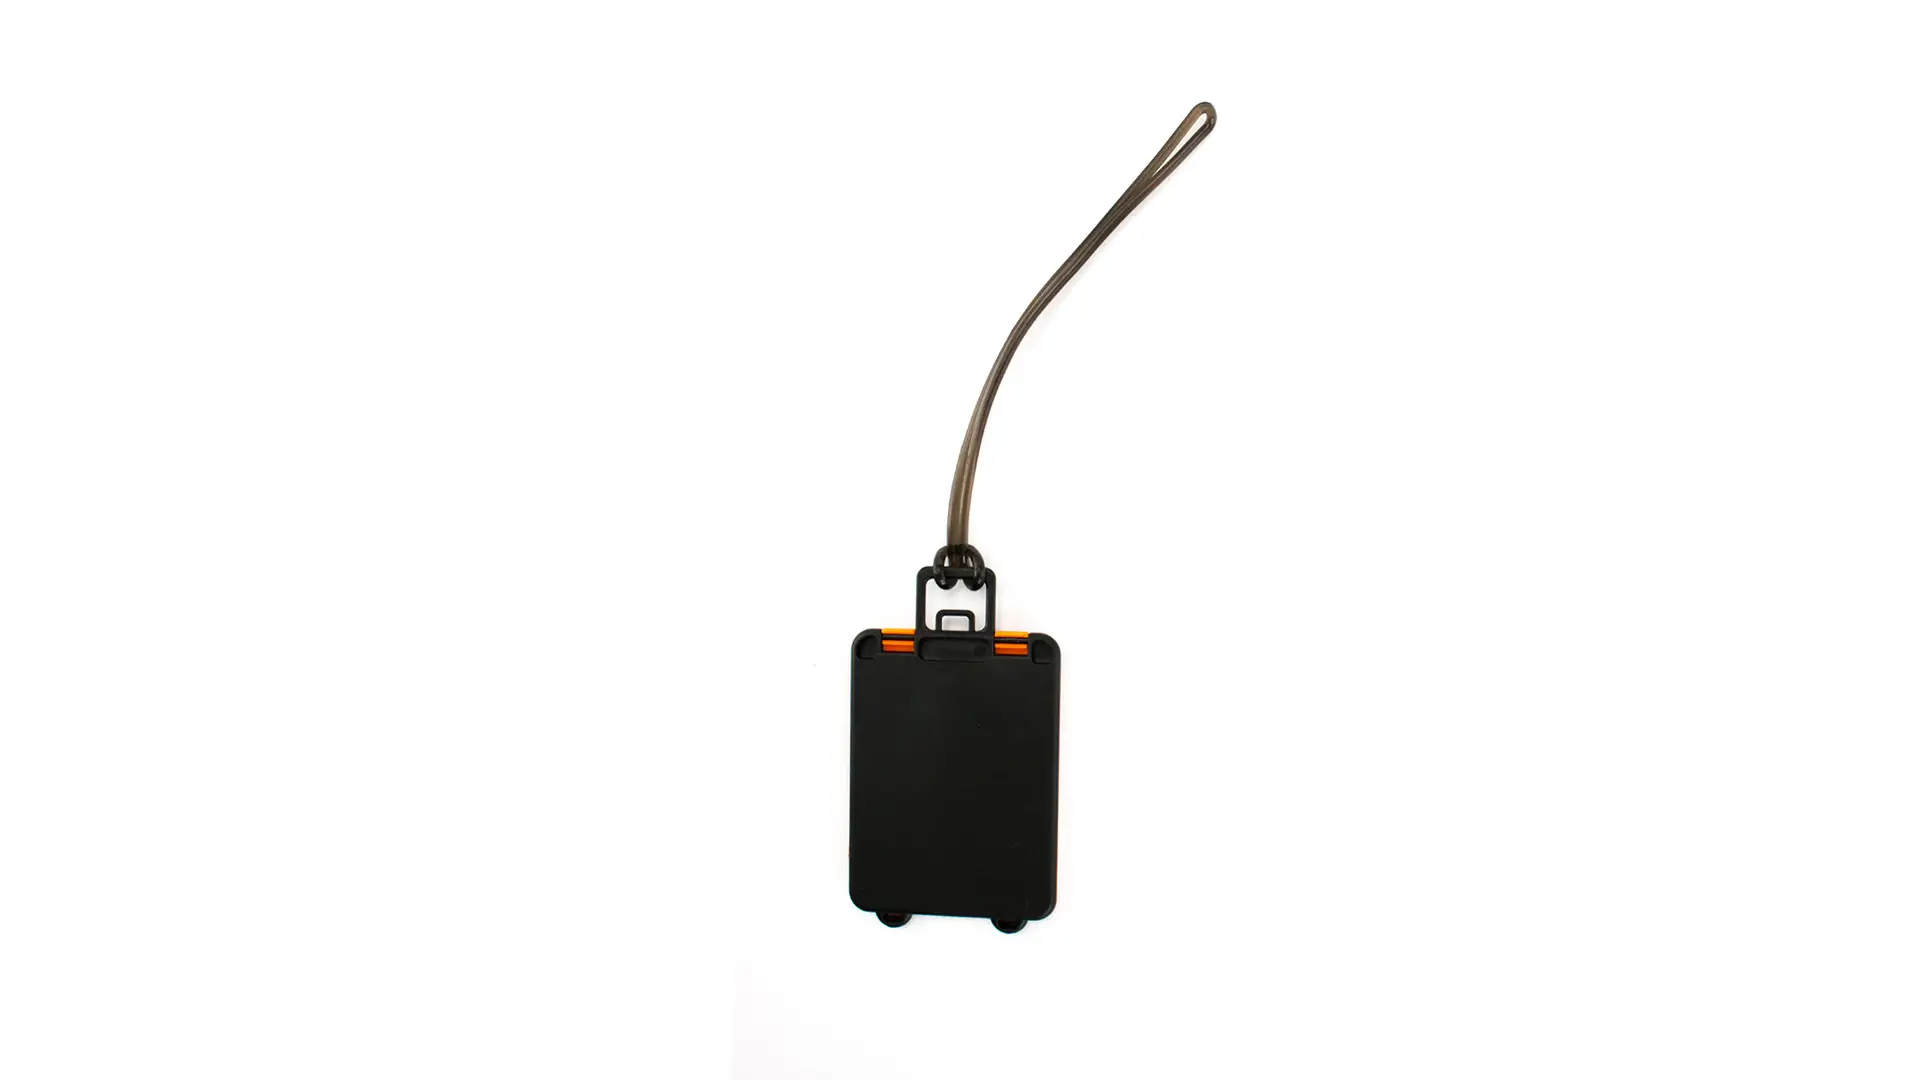 Badge Bagaglio Valigia 6x9 Personalizzato Usato come Gadget per Agenzie Viaggio